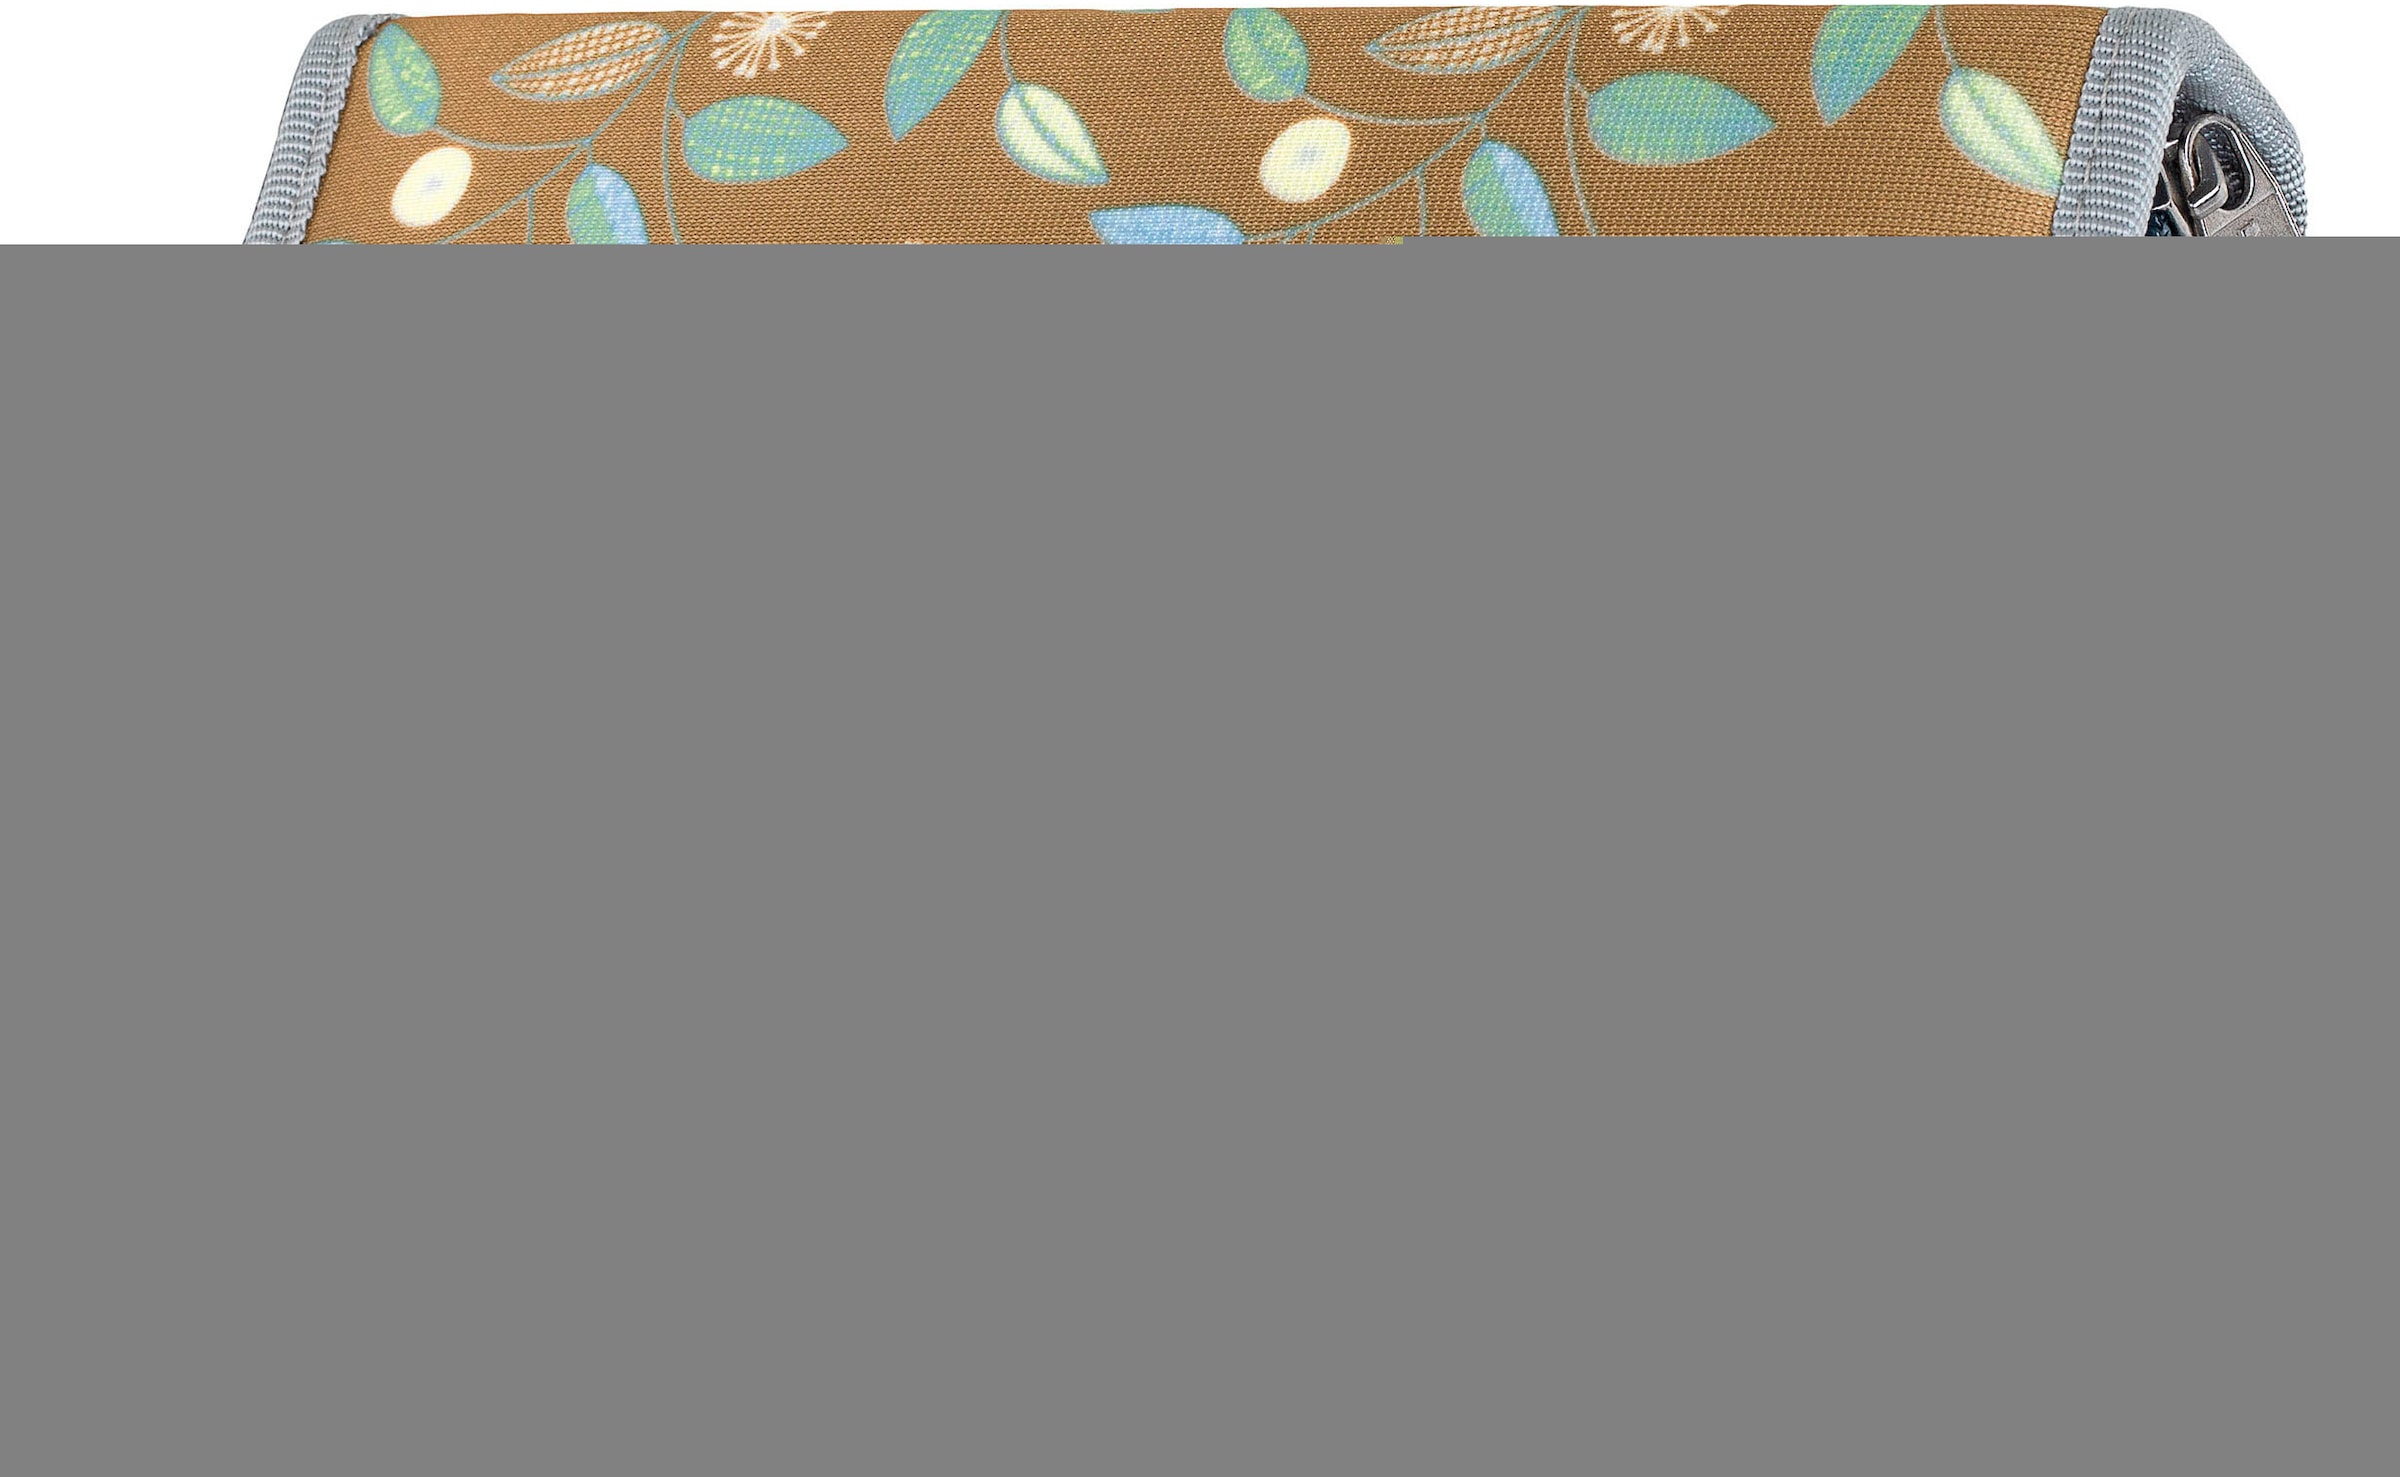 McNeill Schulranzen »Perfecto, Greta«, reflektierende Streifen auf den Schultergurten-retroreflektierende Flächen, inkl. Federmäppchen, Turnbeutel, Schlamperrolle & Motivmagnet